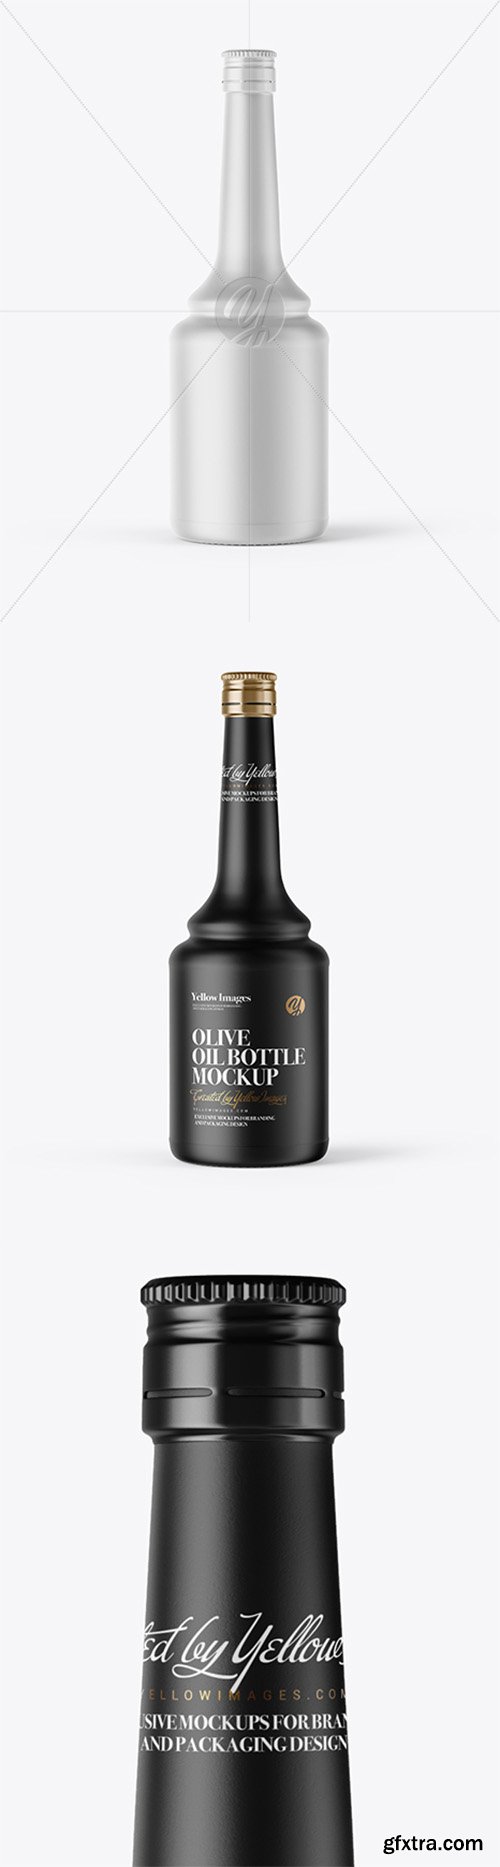 600ml Ceramic Olive Oil Bottle Mockup 37710